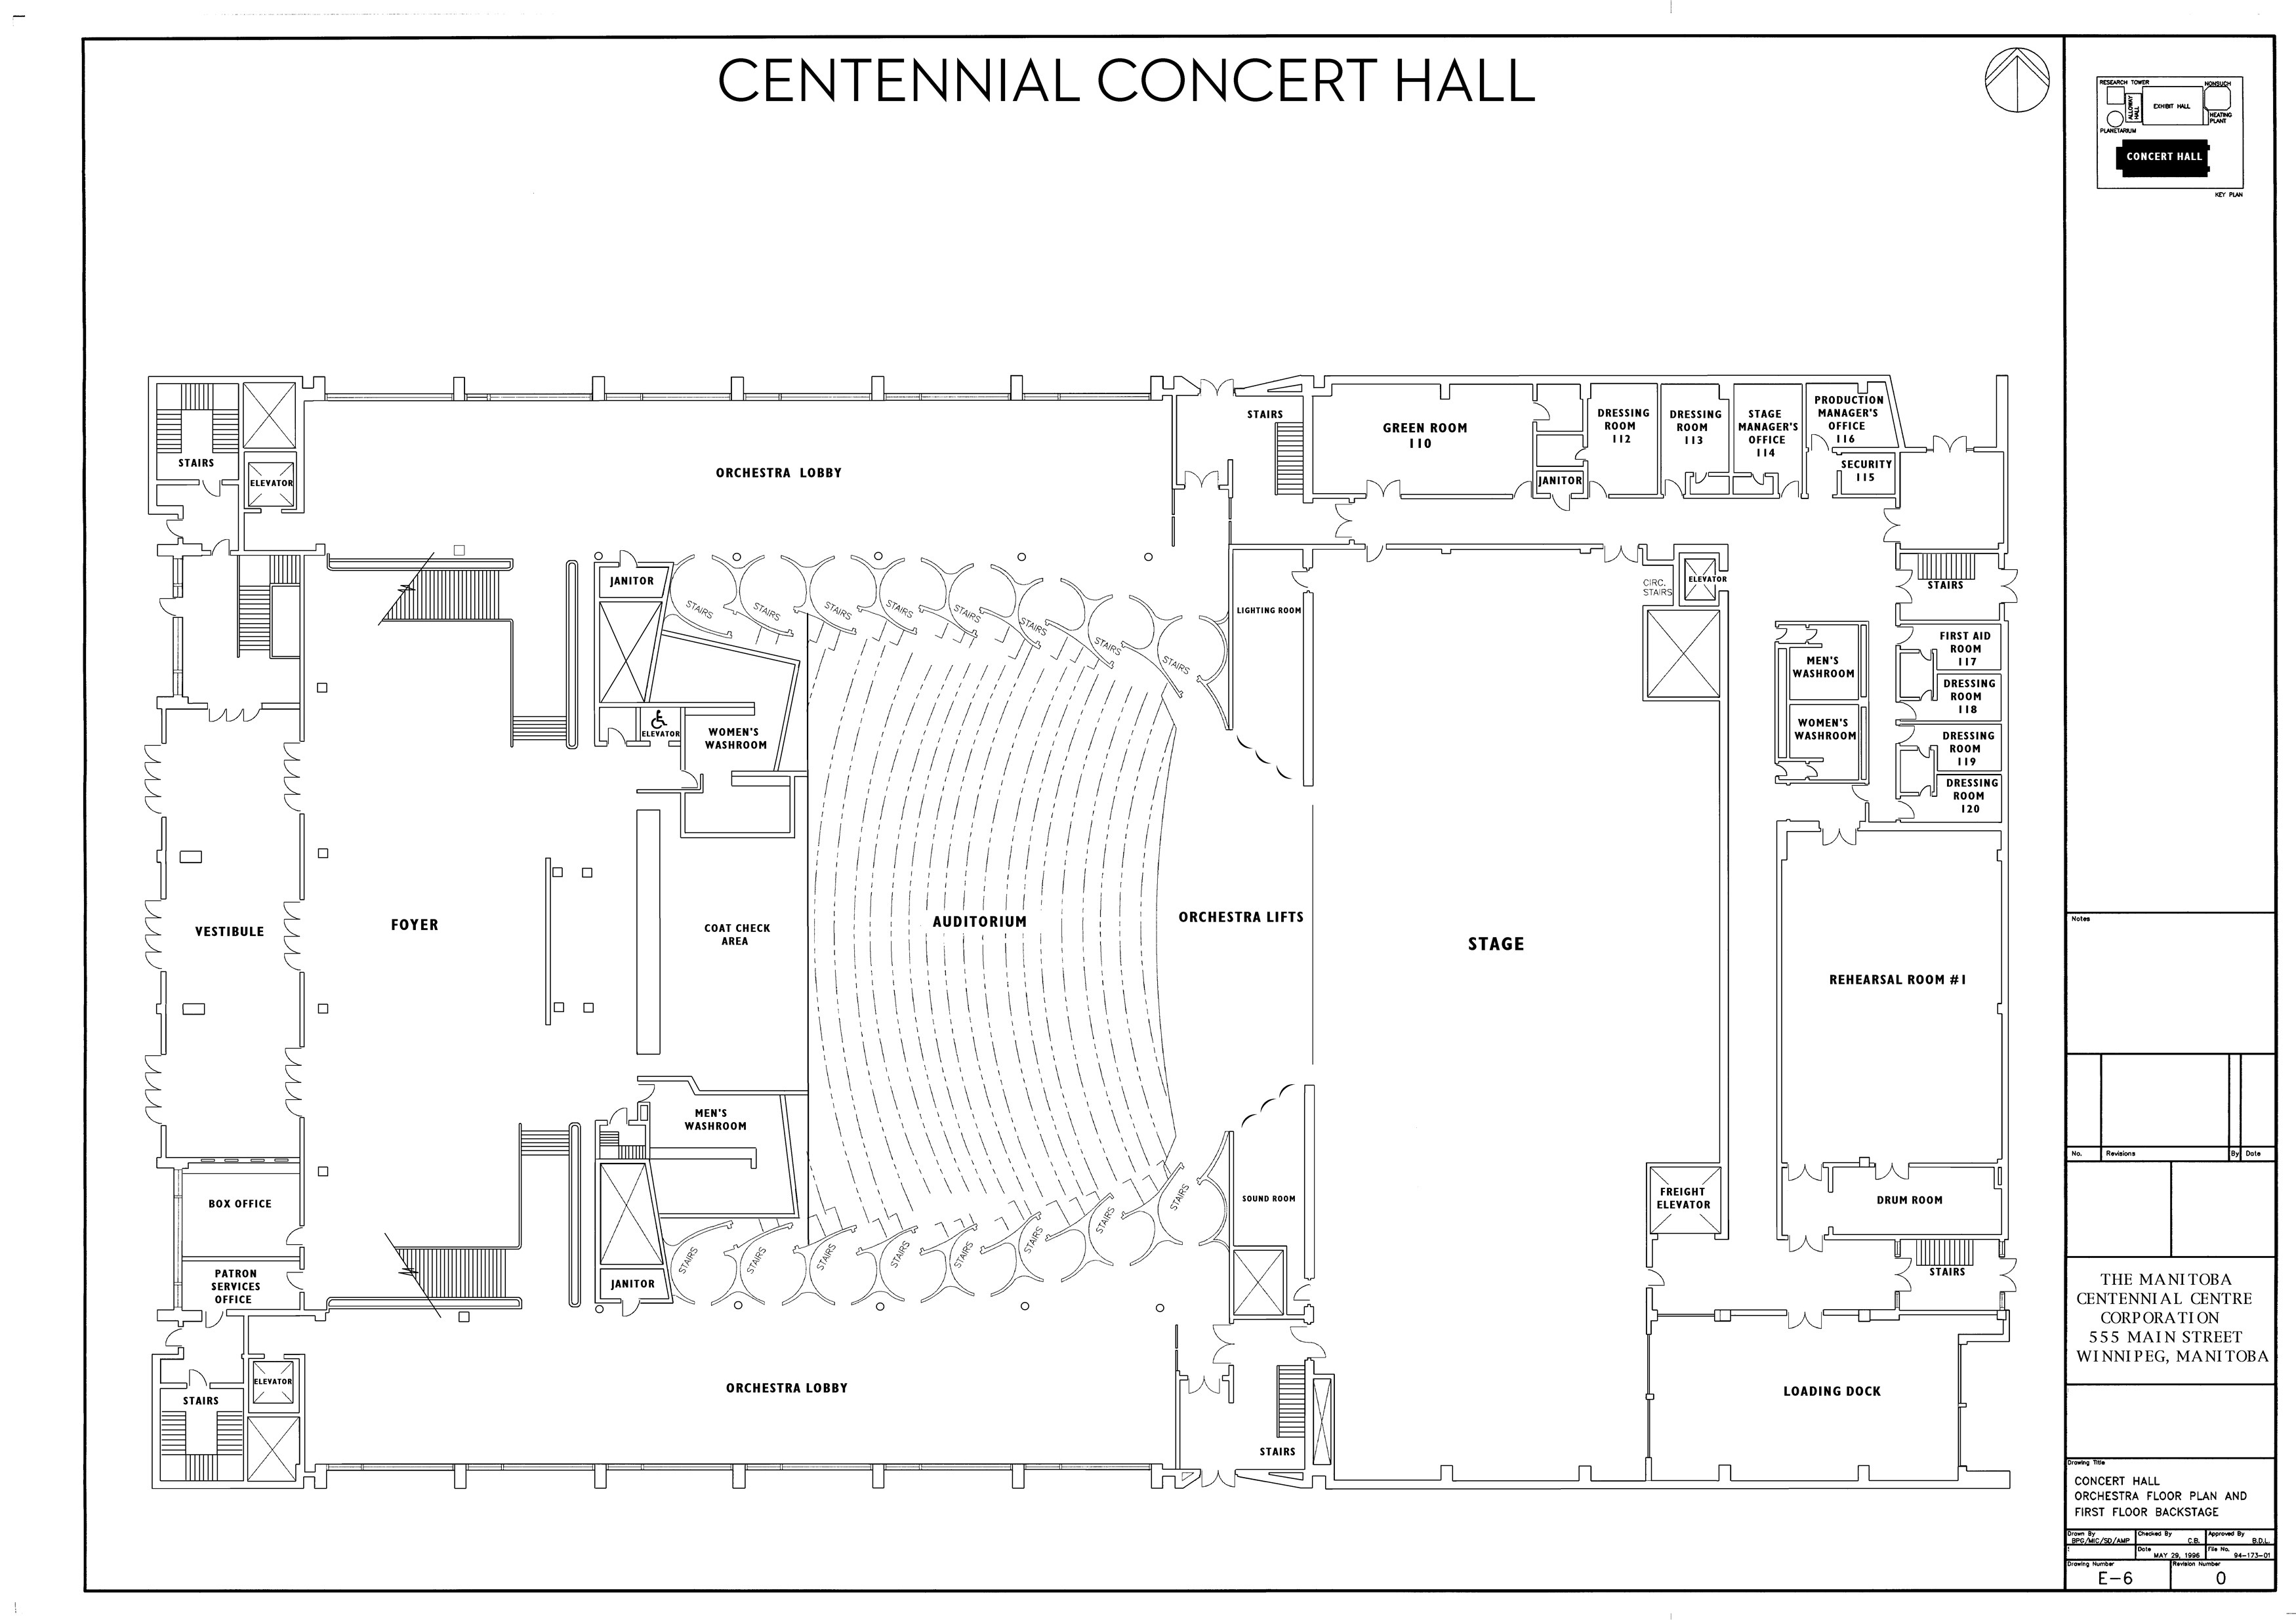 Technical Information - Centennial Concert Hall